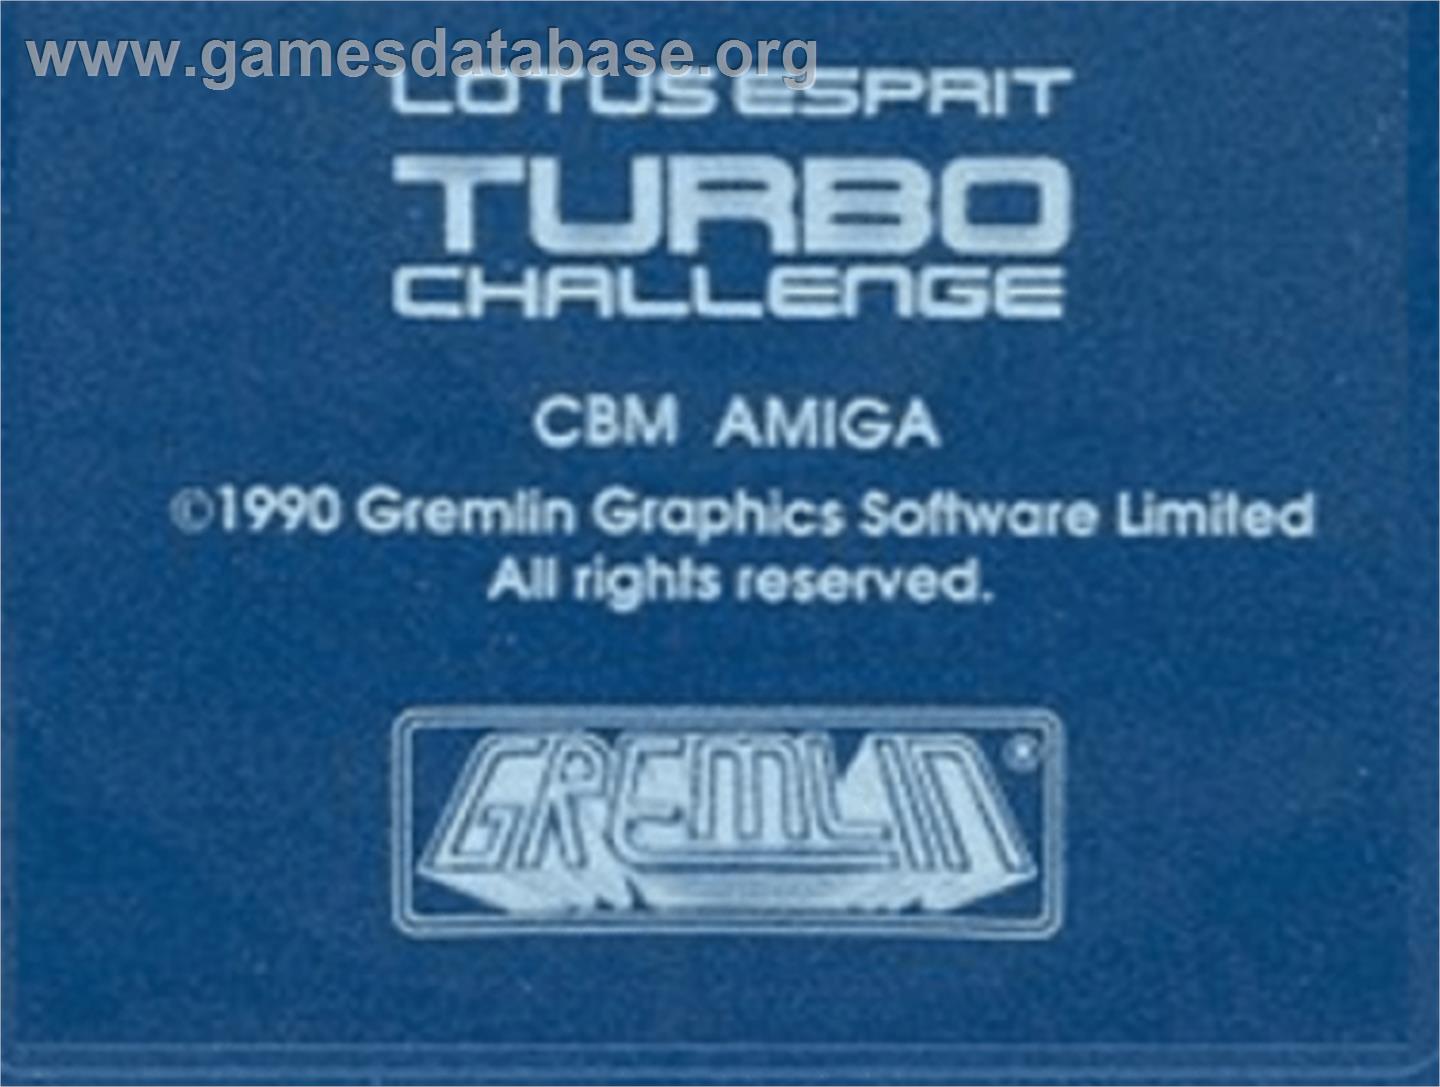 Lotus Esprit Turbo Challenge - Commodore Amiga - Artwork - Cartridge Top